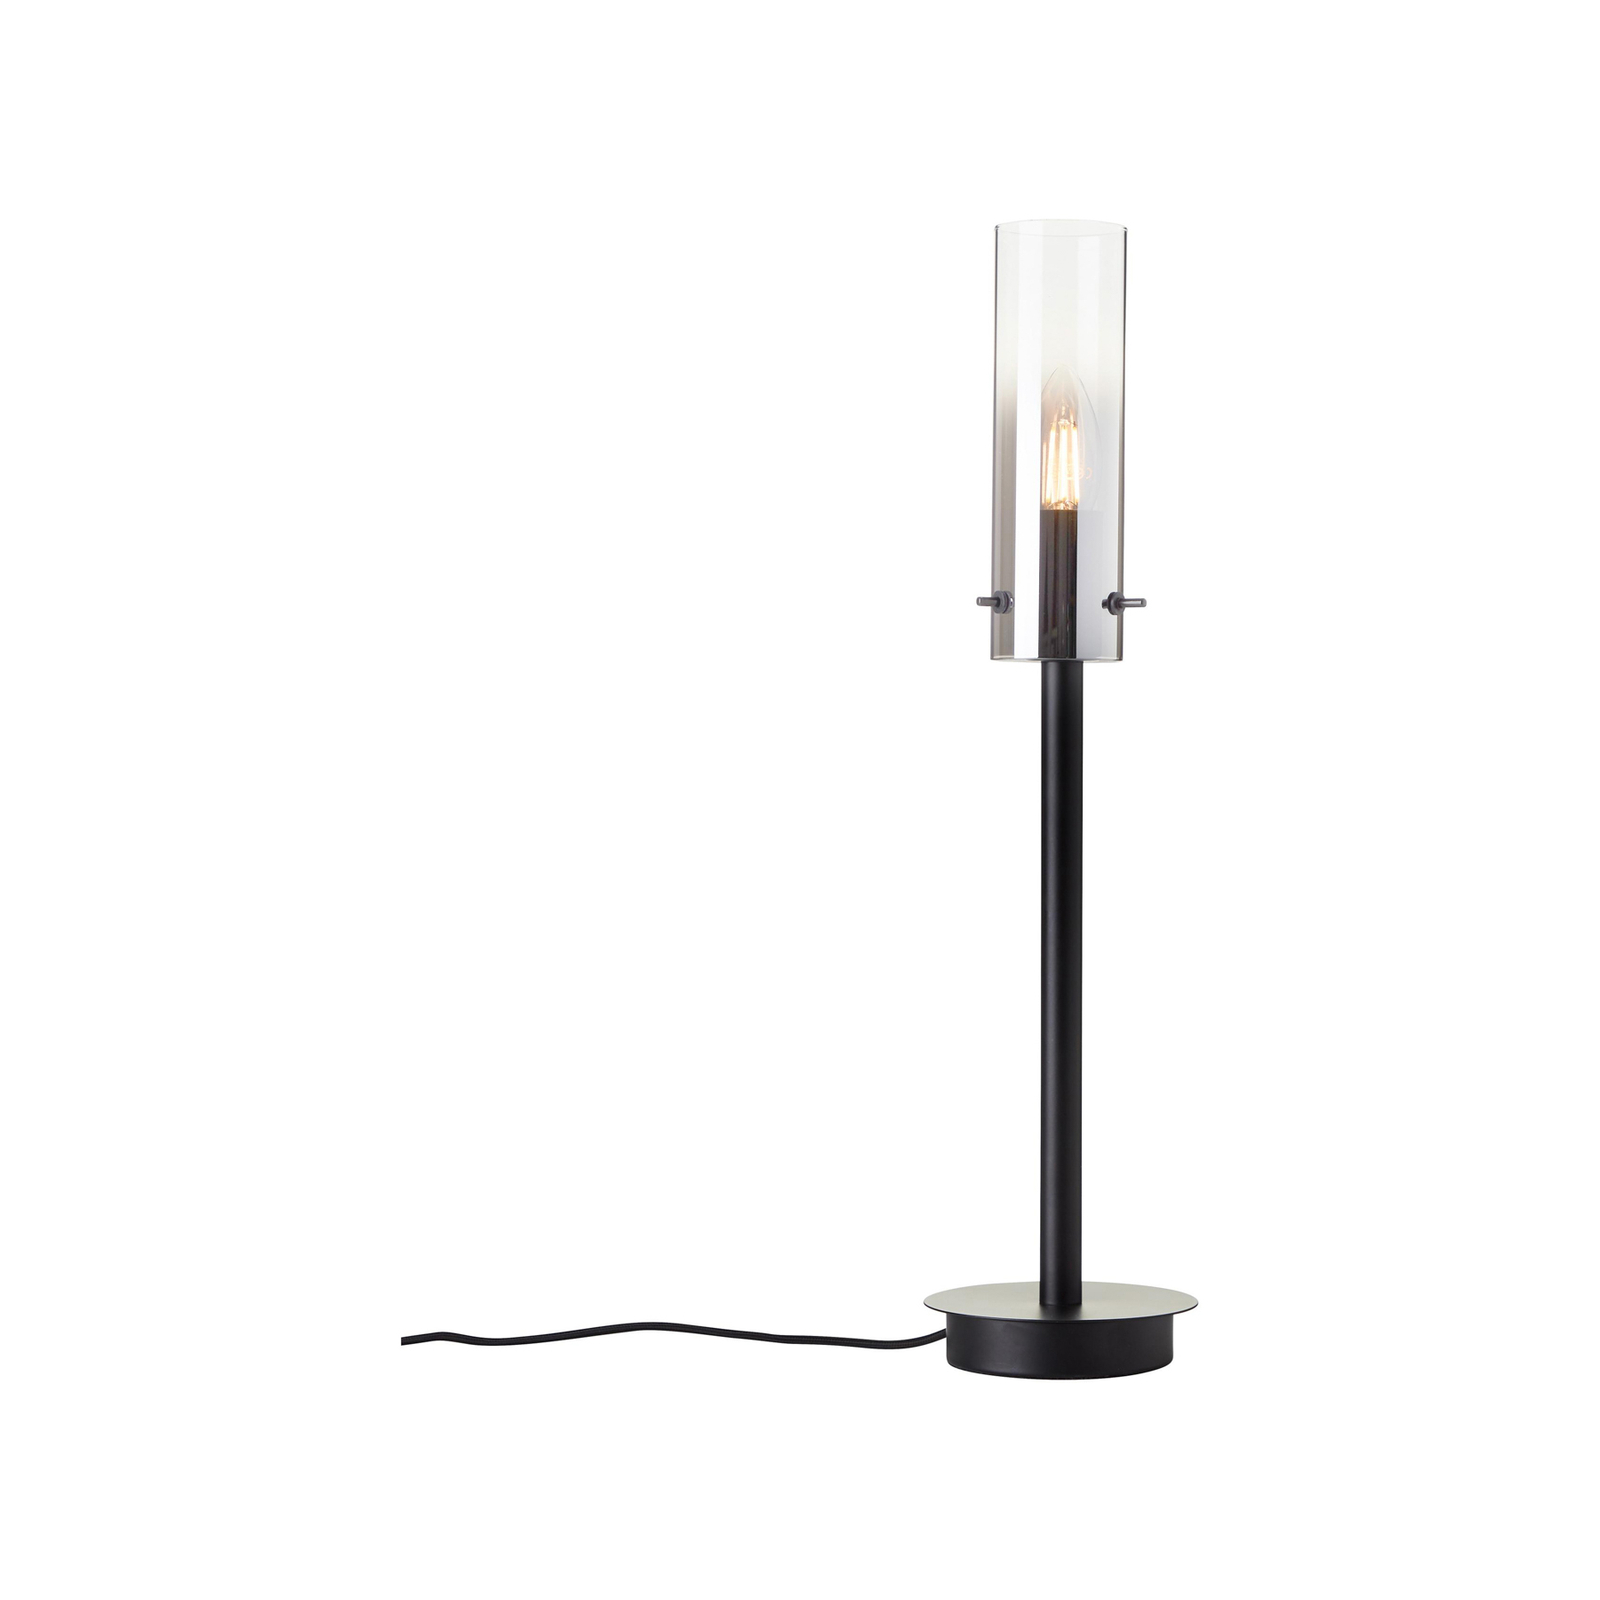 Glasini bordslampa, höjd 49,5 cm, rökgrå/svart, glas